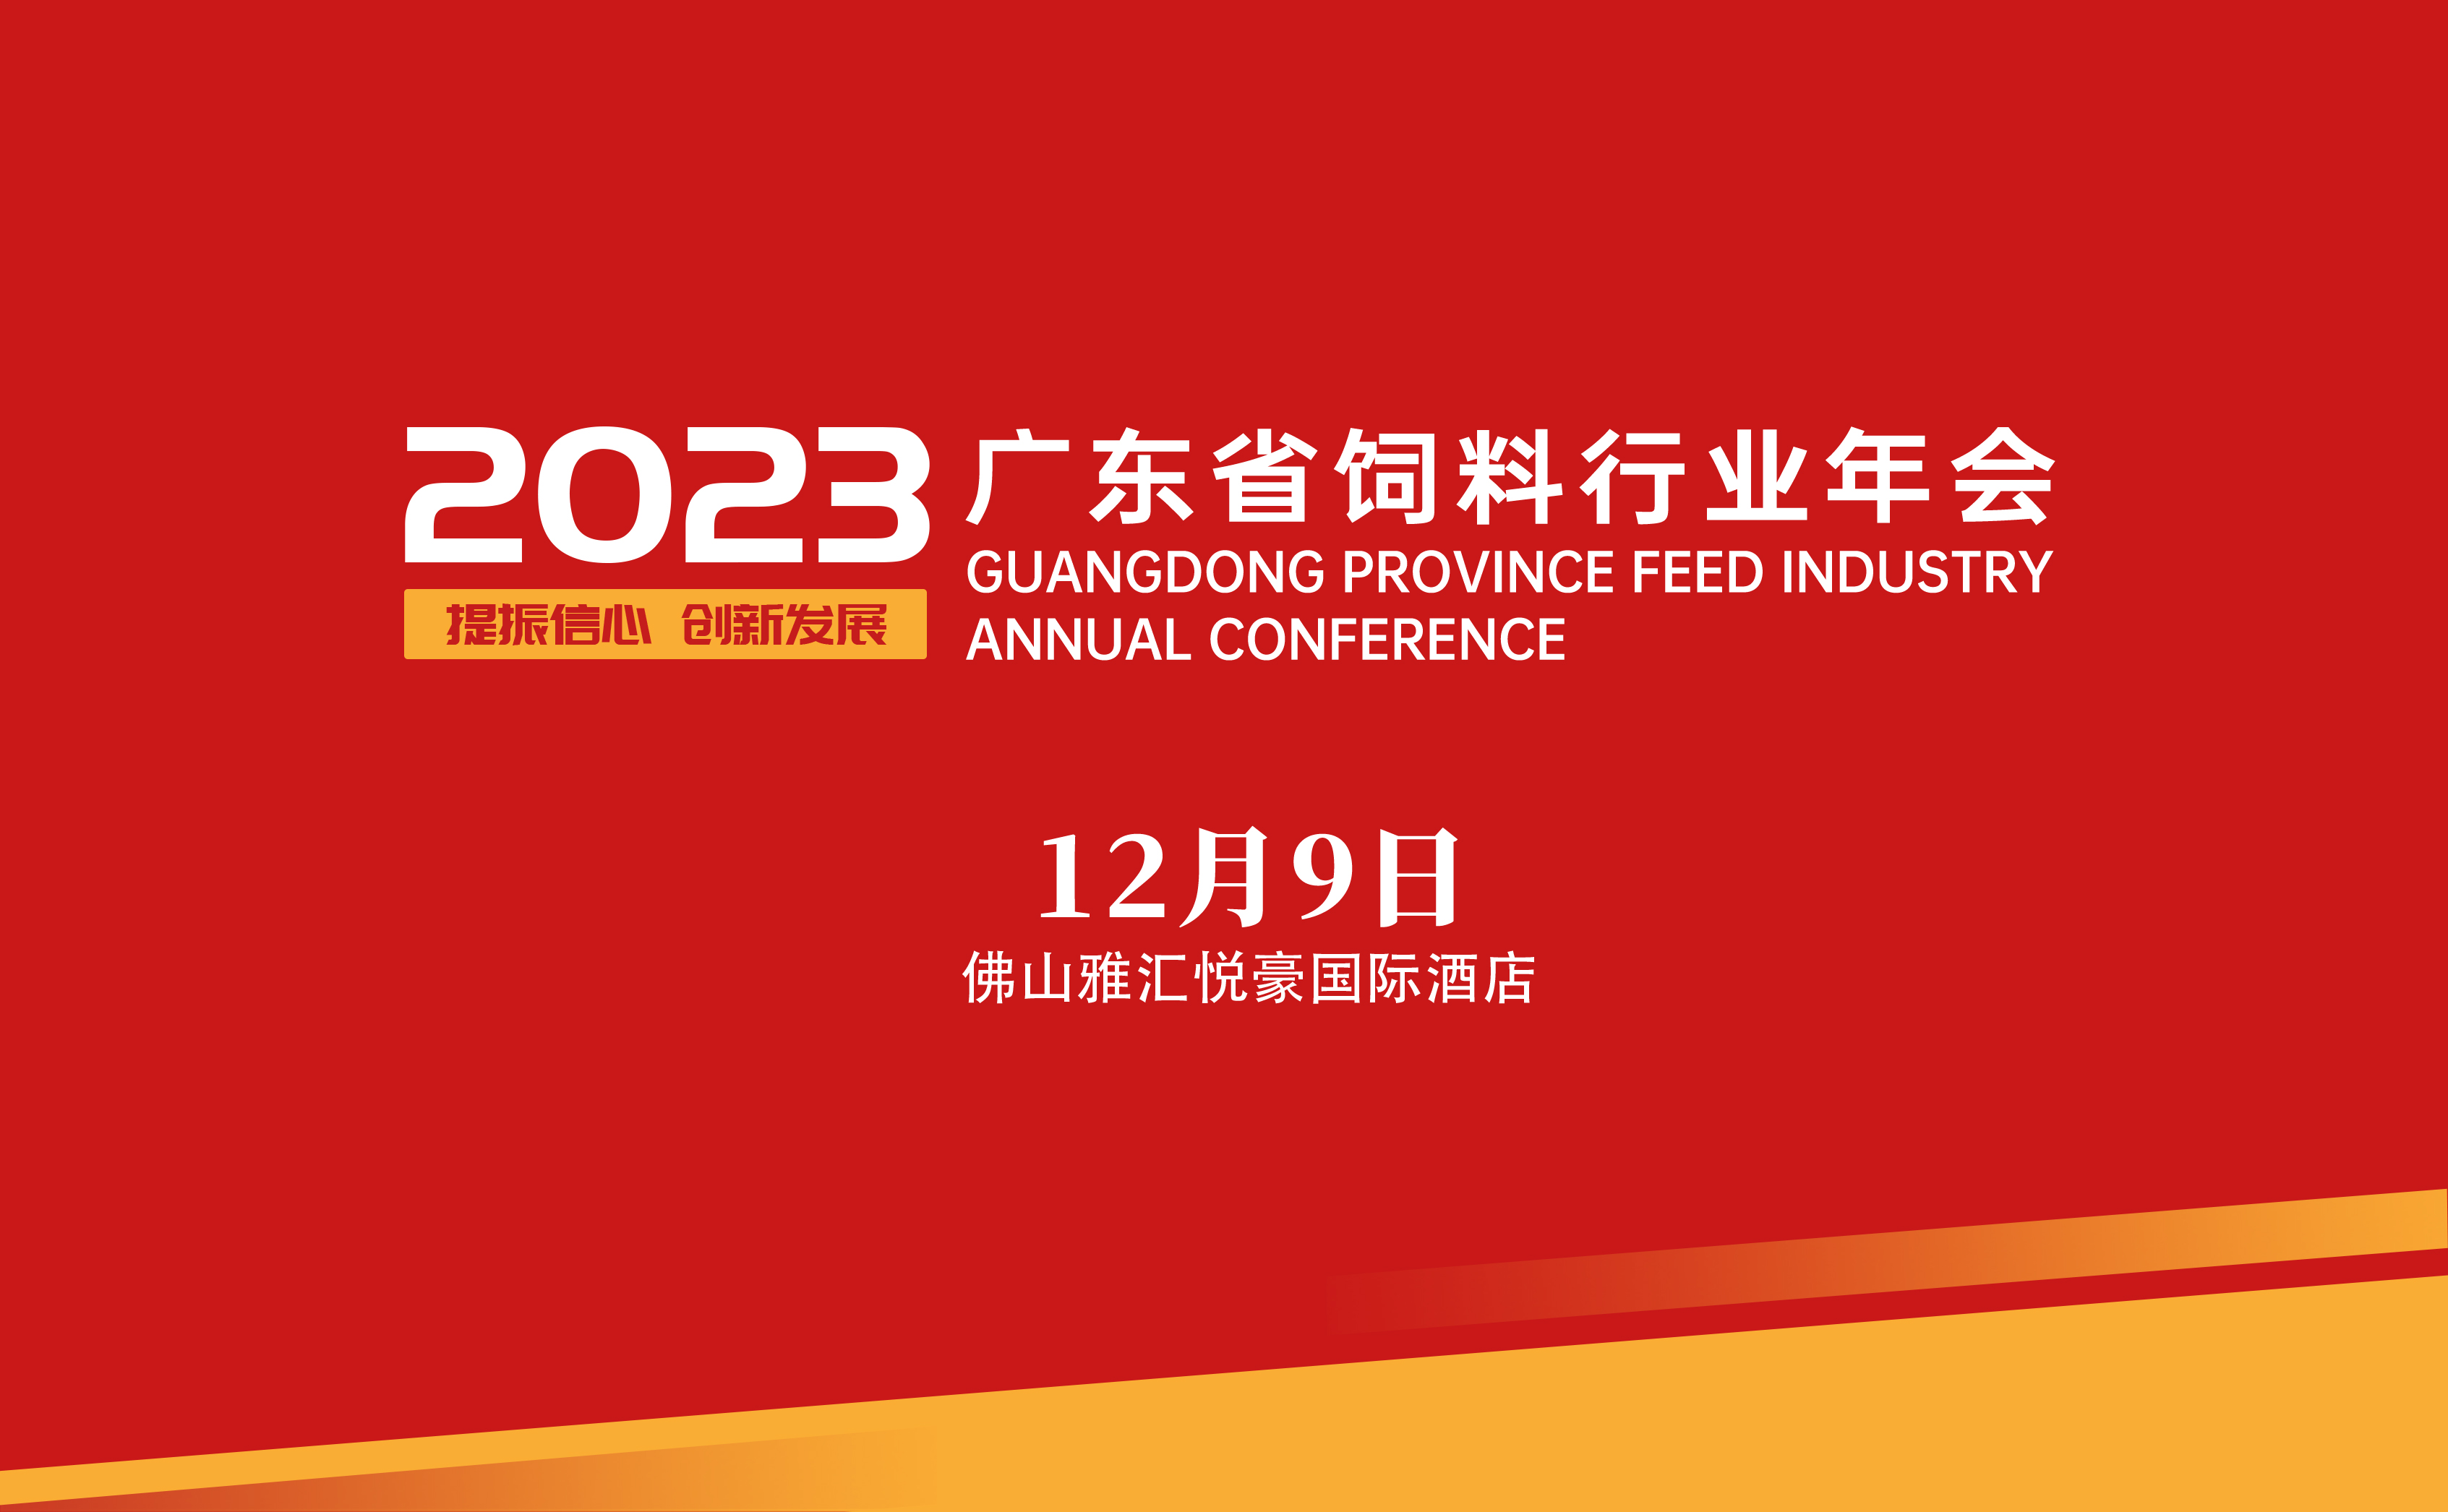 2023年广东省饲料行业年会 筹备工作的公告（二）